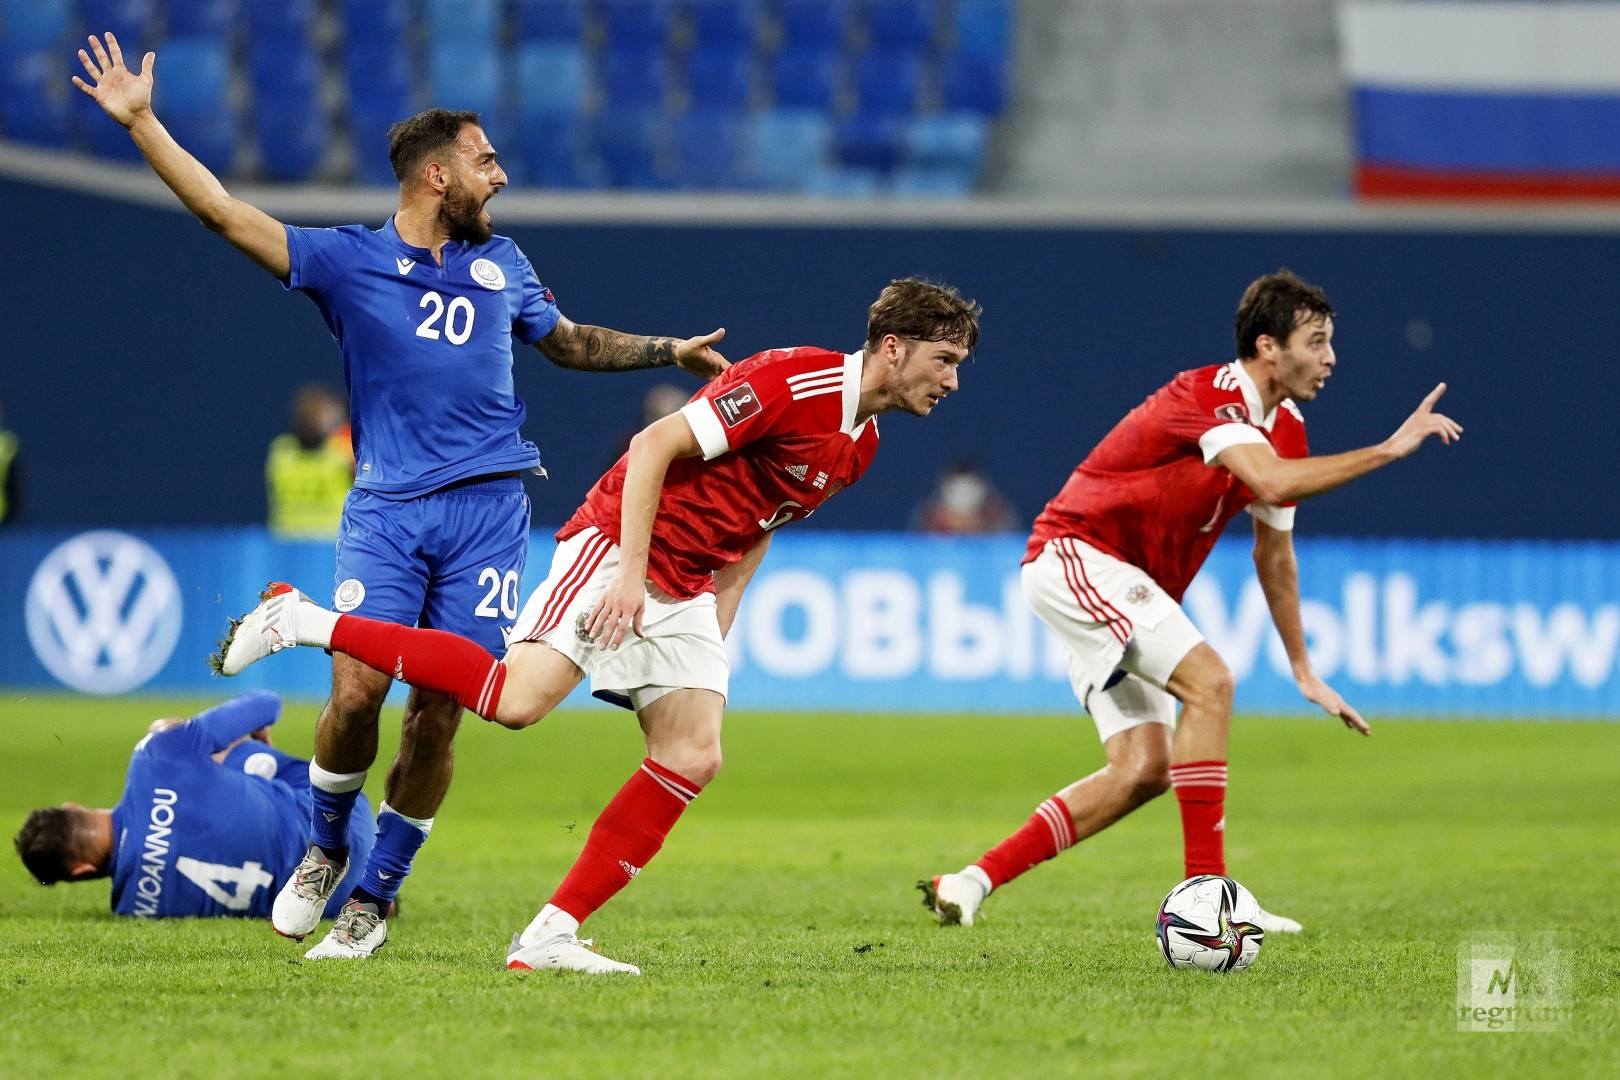 Отборочный матч чемпионата мира-2022 по футболу между командами сборных Россия и Кипр 